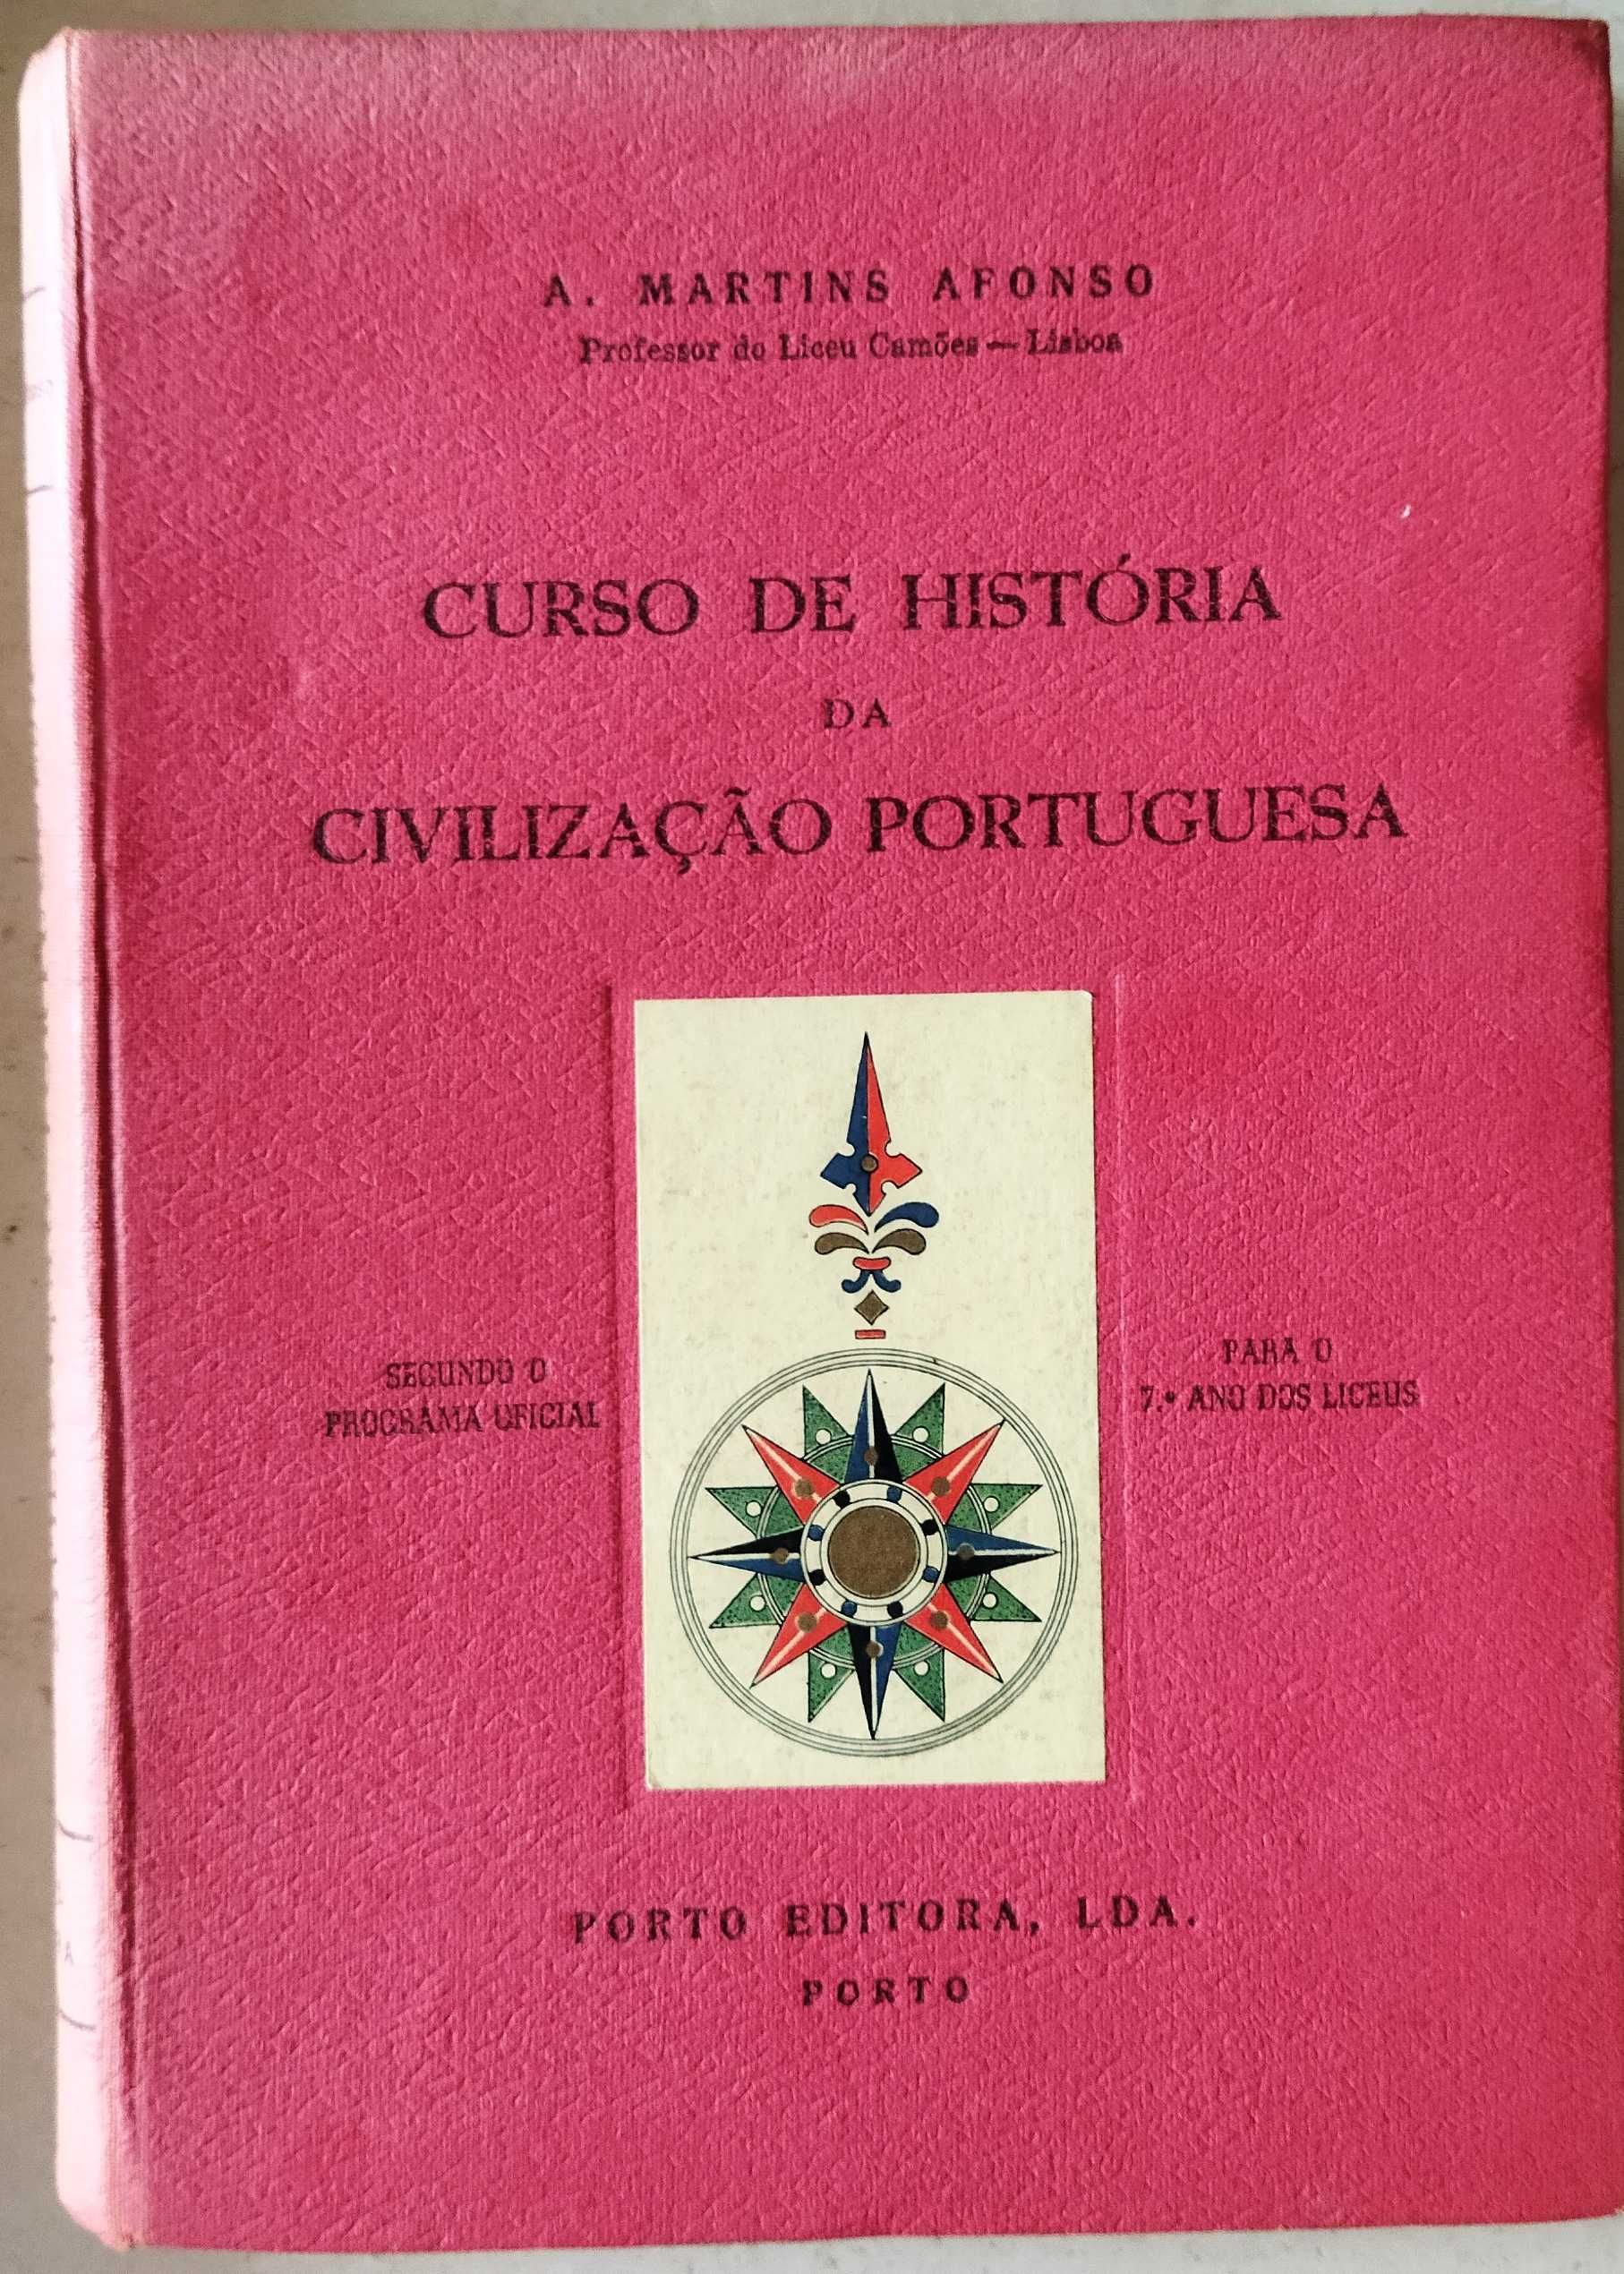 Curso de História da Civilização Portuguesa, professor Martins Afonso